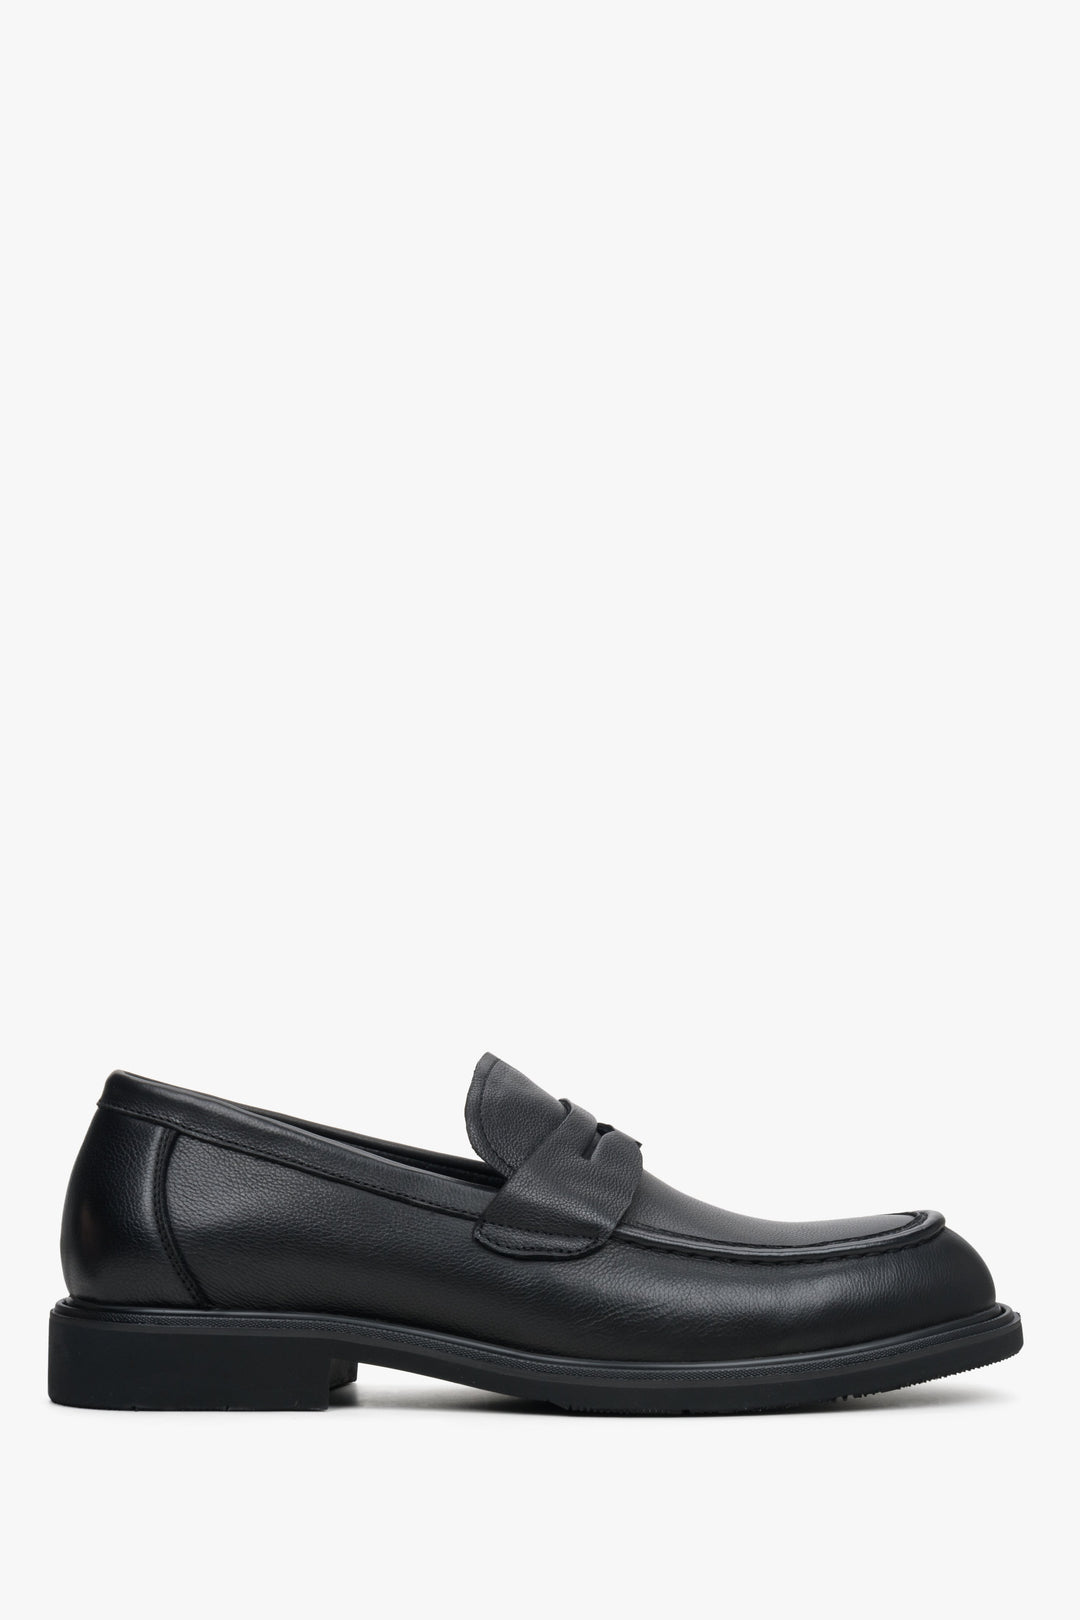 Men's Black Loafers made of Genuine Leather Estro ER00113950.